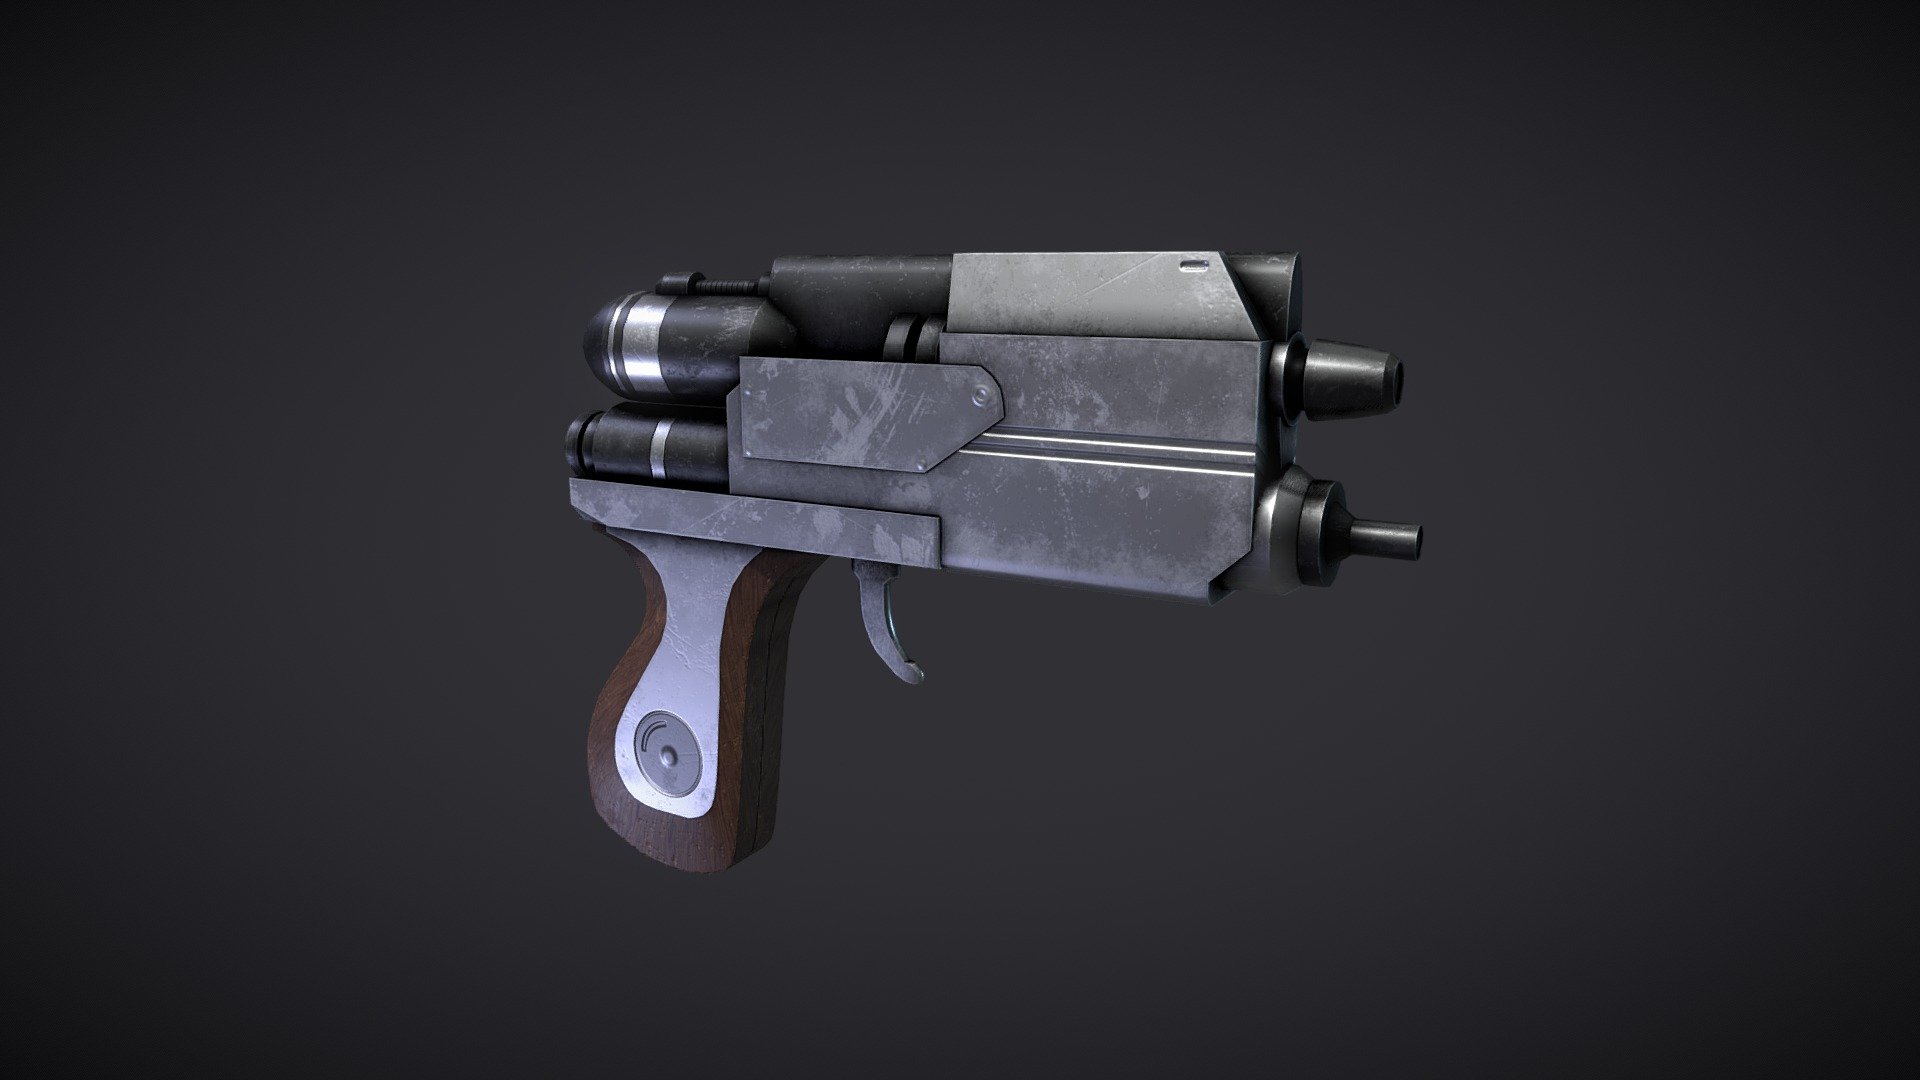 Blurrg-1120 Blaster Pistol